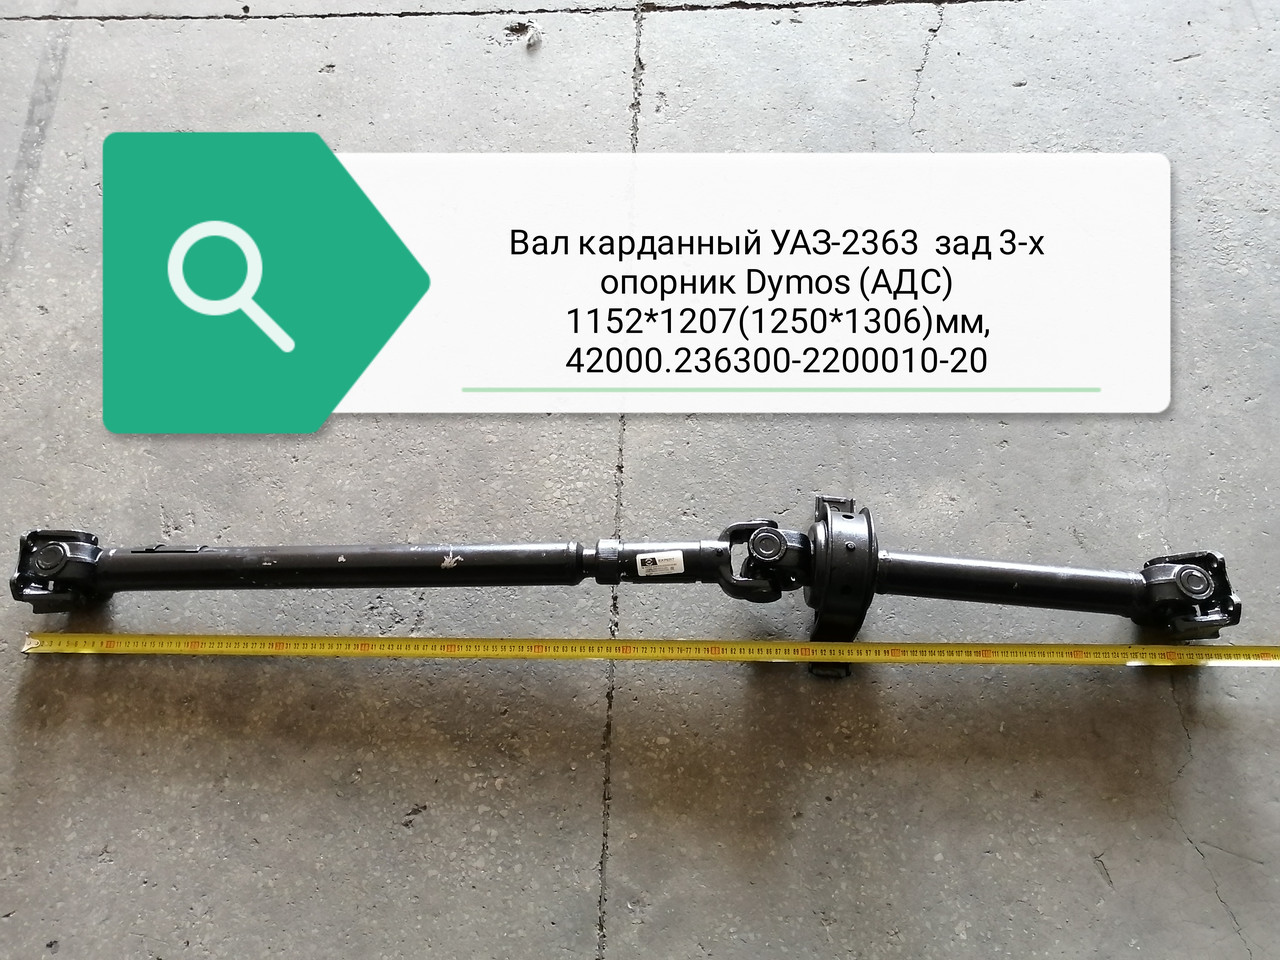 Вал карданный УАЗ-2363 зад 3-х опорник Dymos (АДС) 1152*1207(1250*1306)мм, 42000.236300-2200010-20